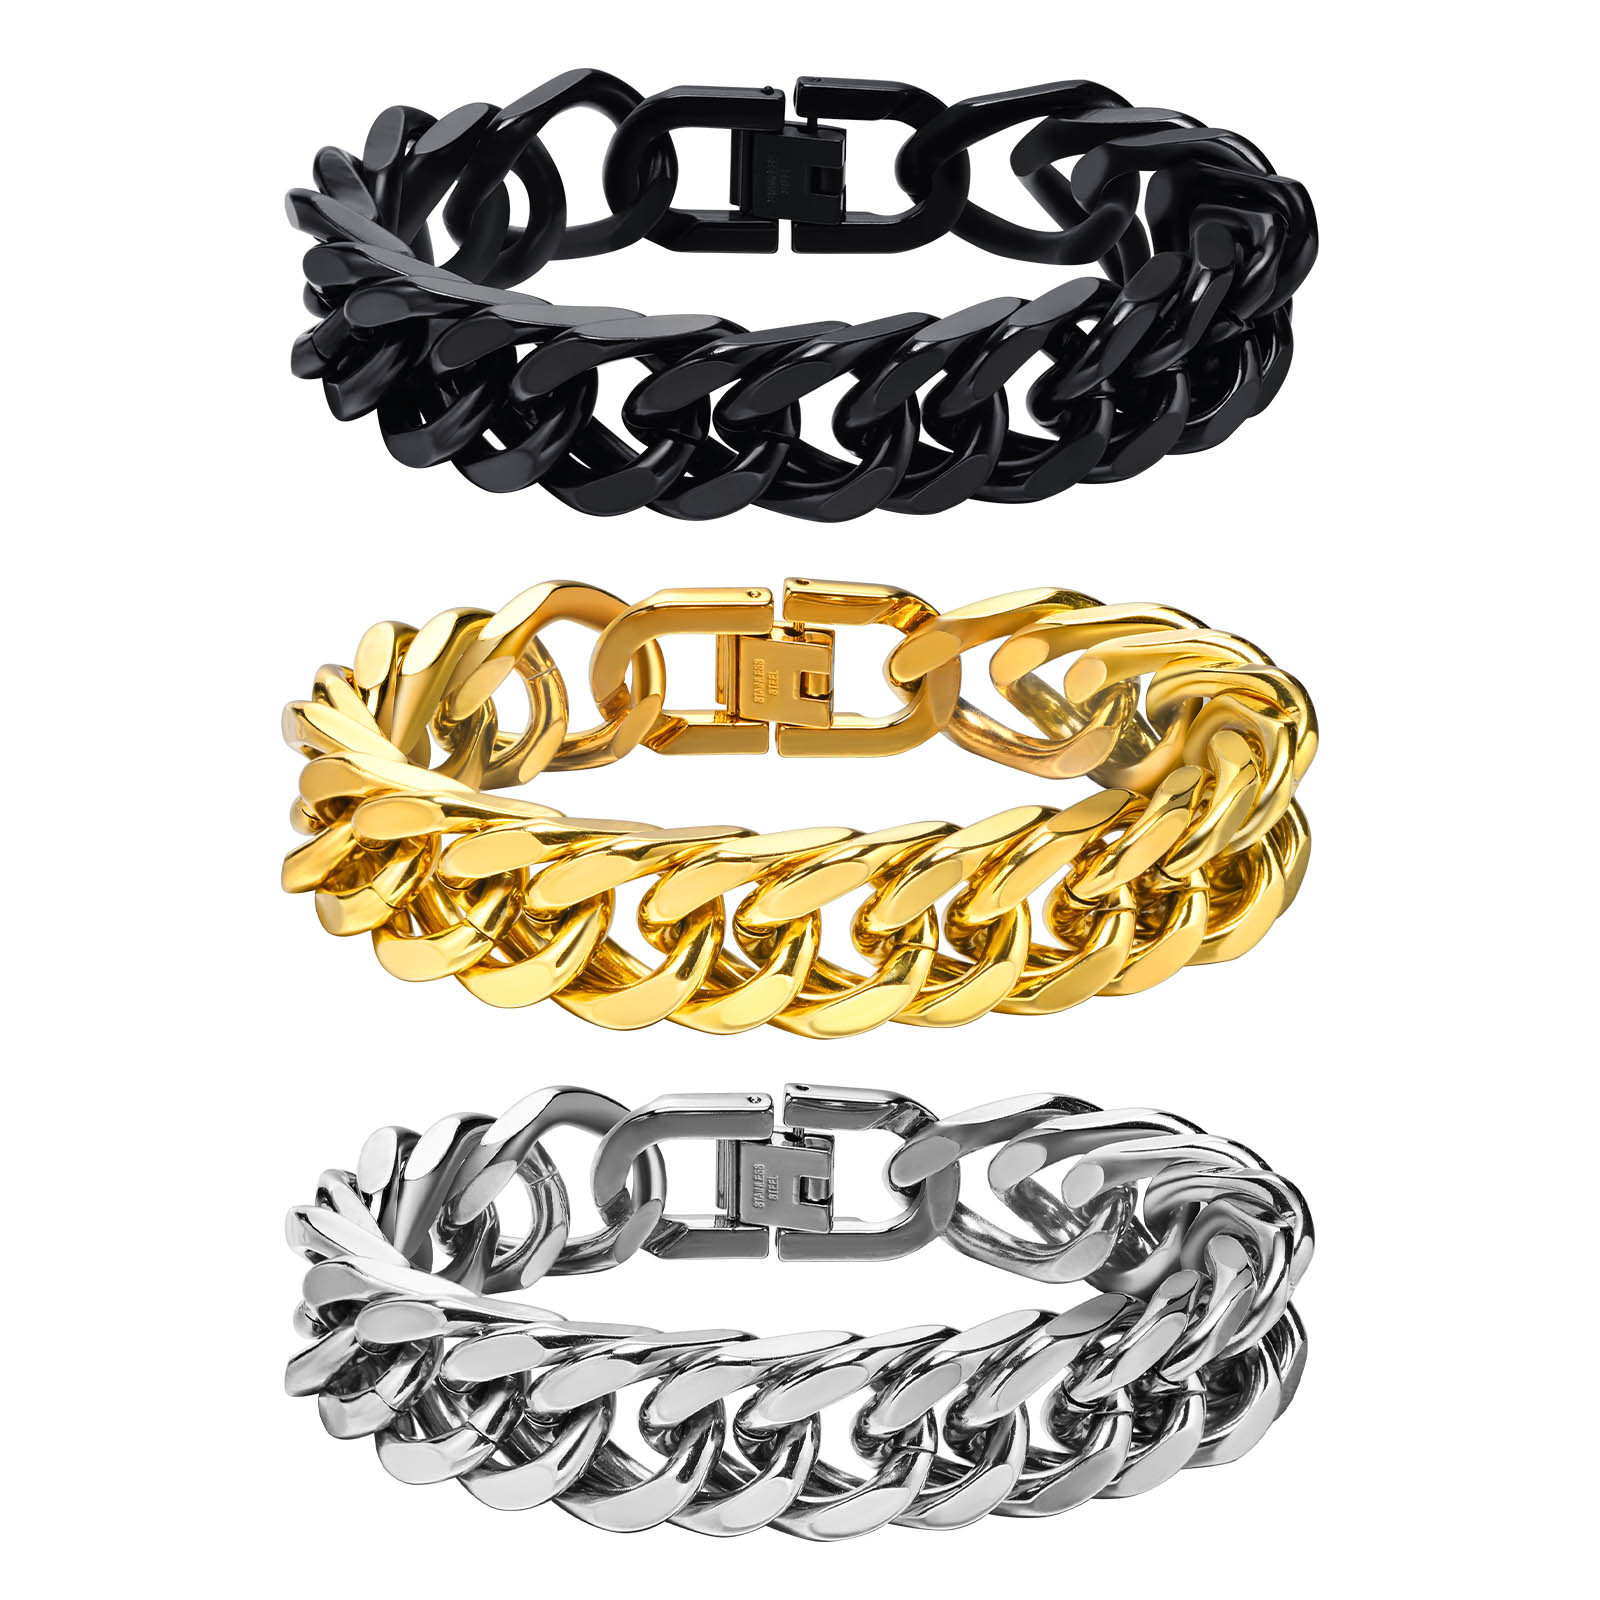 Steel chain width 15MM; bracelet total length 21.5 cm